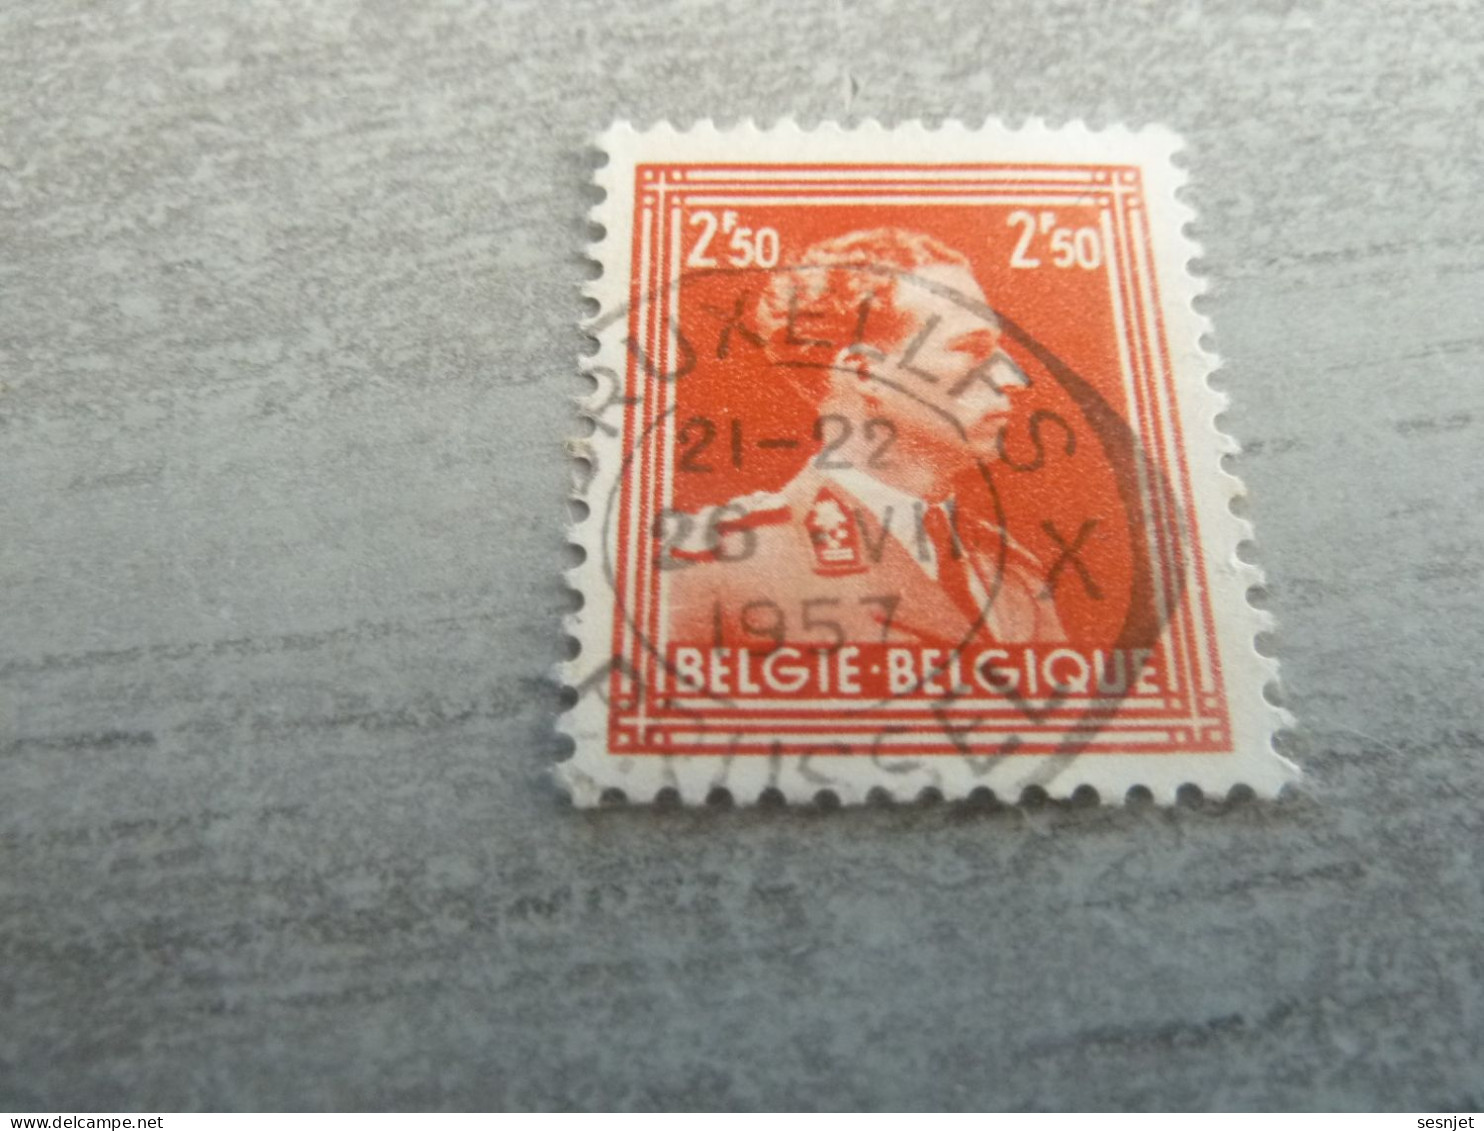 Belgique - Albert 1 - Val  2f.50 - Rouge - Oblitéré - Année 1950 - - Oblitérés